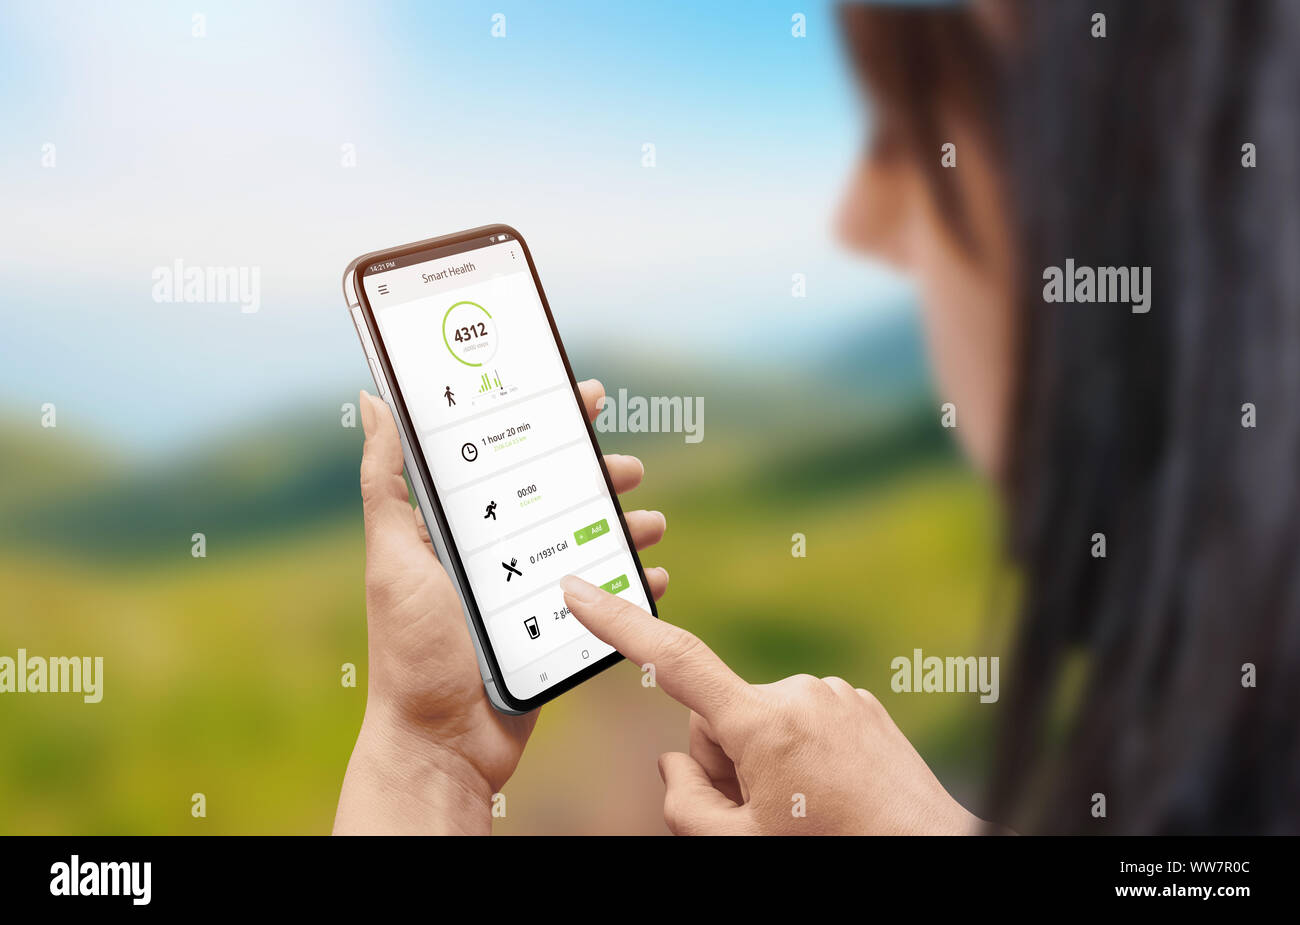 Salud Smart app en un teléfono móvil en mano de mujer. Chica teléfono inteligente para utilizar medidas de vigilancia, calorías, frecuencia cardíaca. Foto de stock